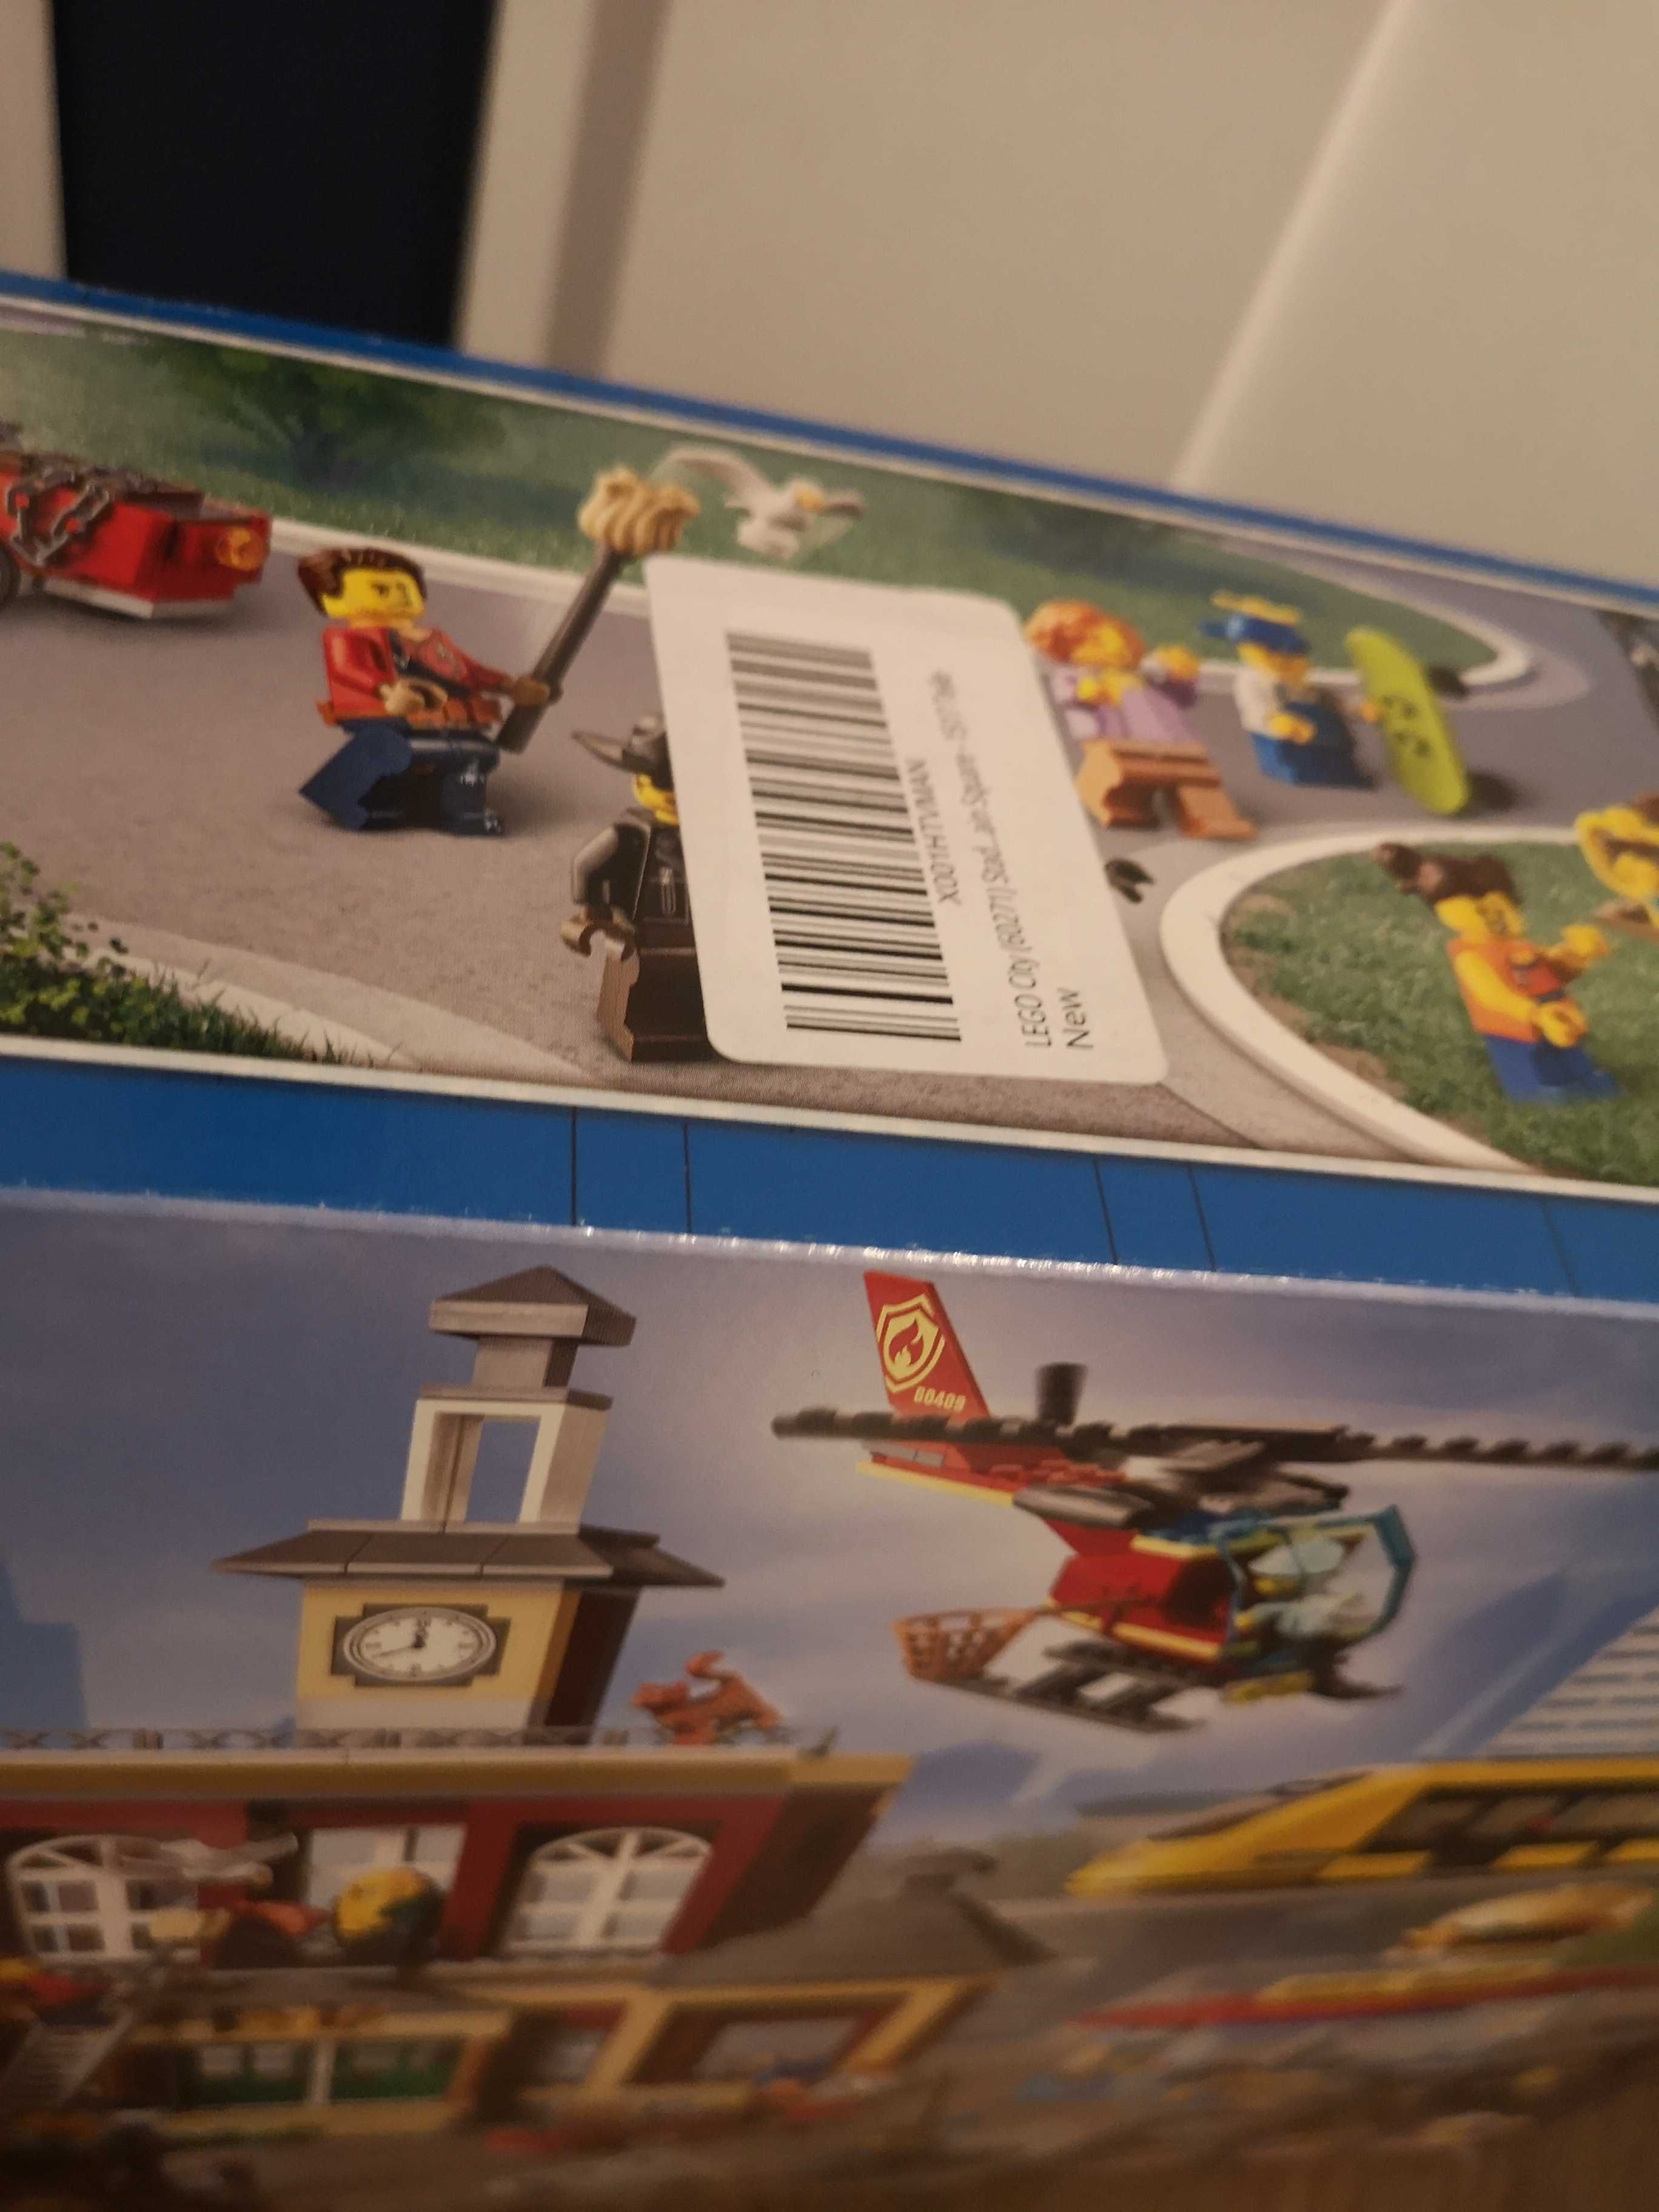 Lego City - 60271 - Rynek